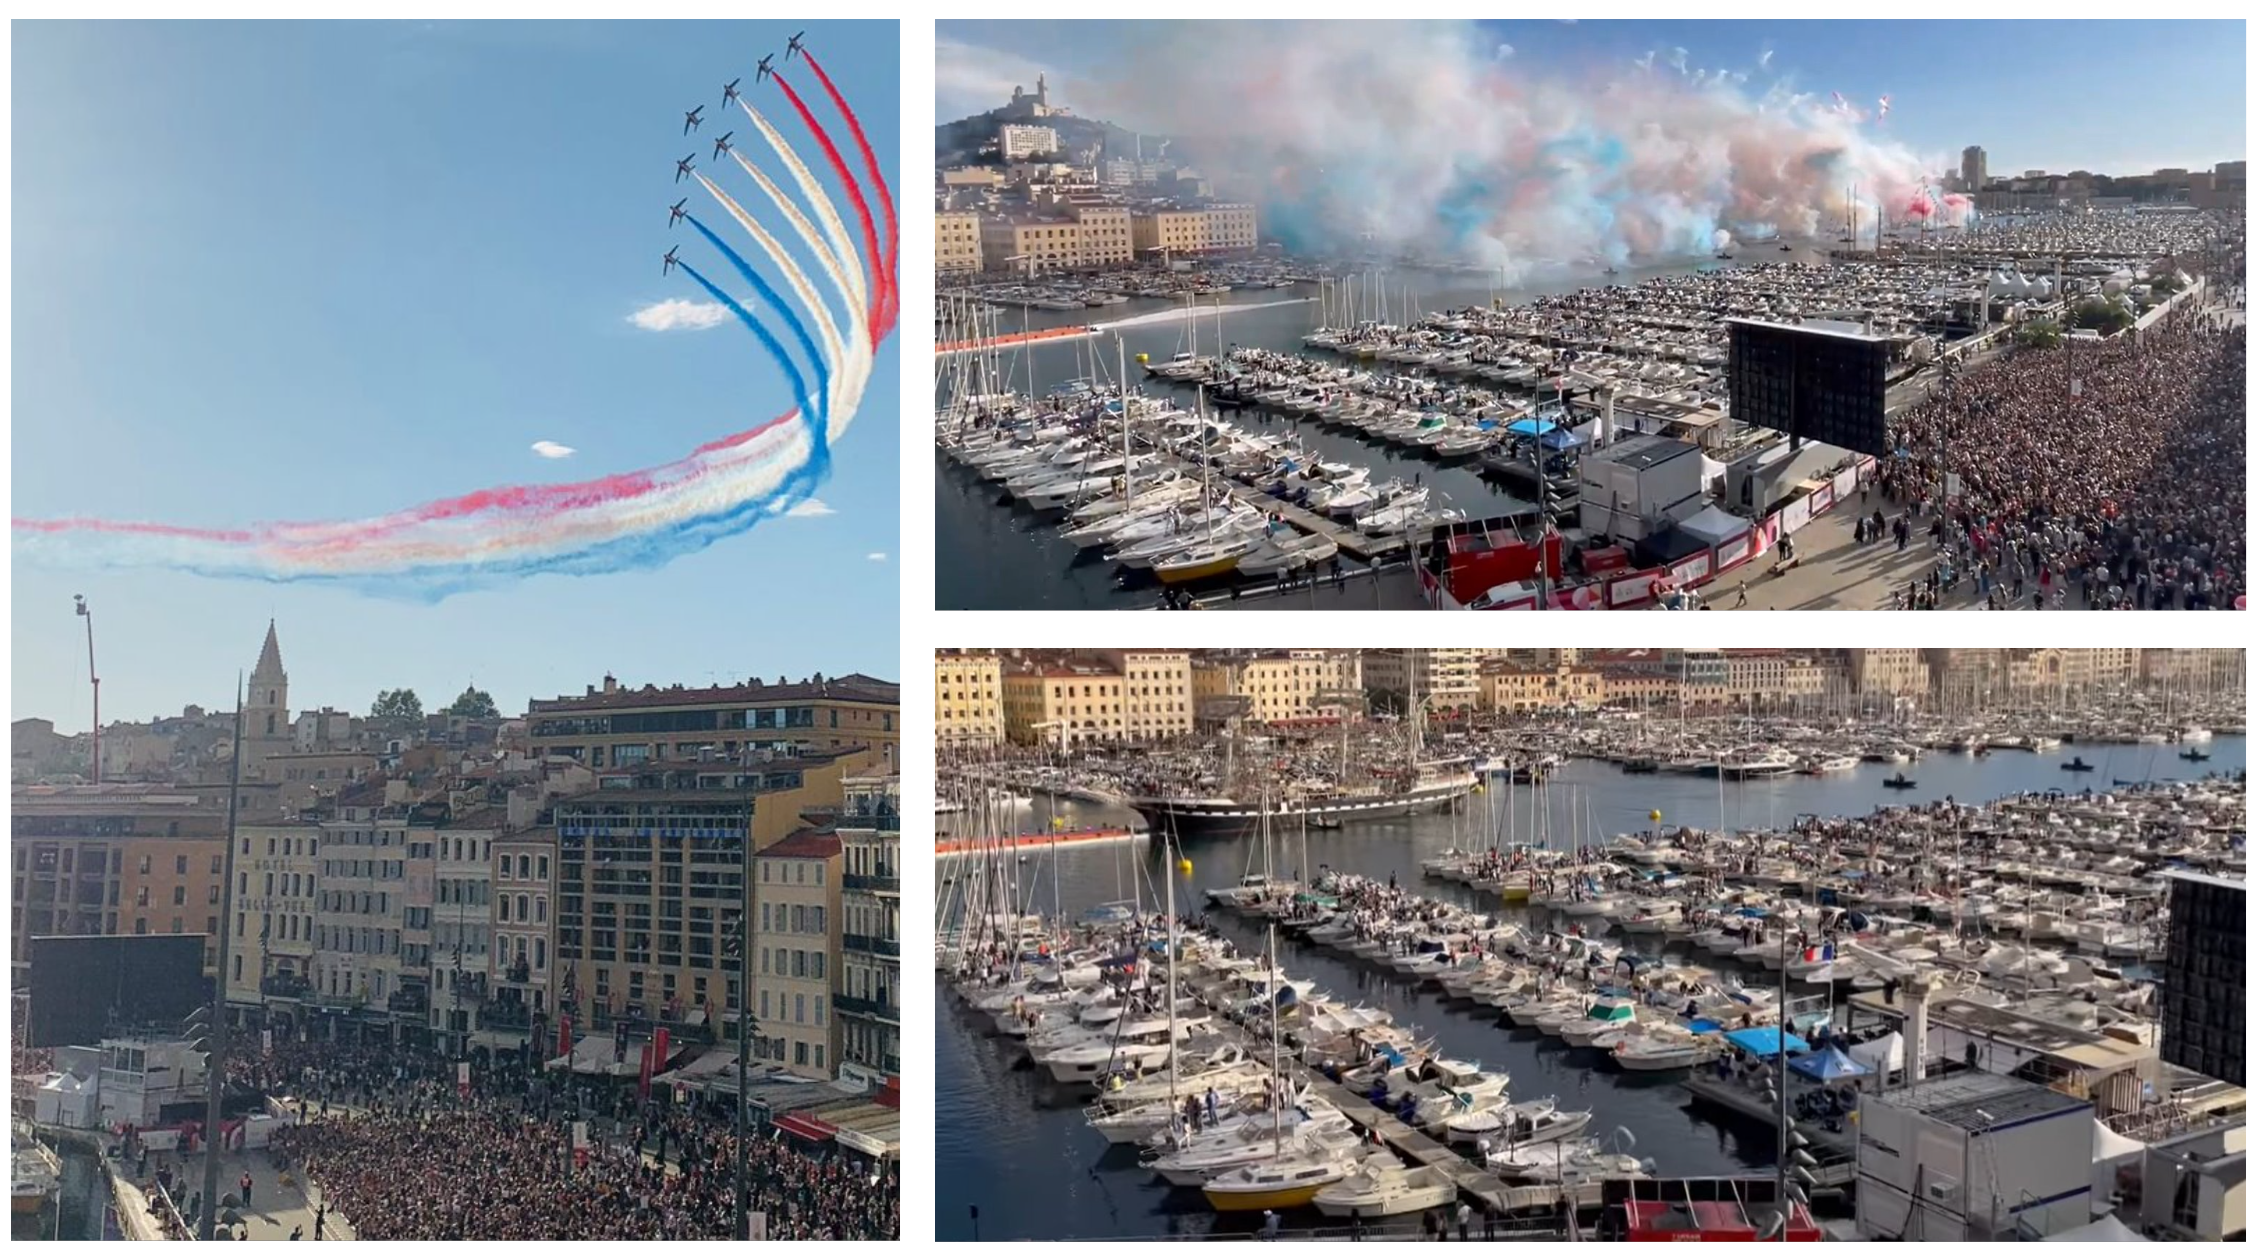 Cette image est un montage de 3 photos. La première à gauche montre le Vieux-Port de Marseille avec une foule dense lors de l'arrivée de la flamme olympique. On y voit les bâtiments entourant le port et dans le ciel, 8 avions de la patrouille de France virant au-dessus des immeubles en lâchant des fumées bleues, blanches et rouges. Au milieu de la foule, on peut apercevoir la construction modulaire temporaire Allomat sous un écran géant. La deuxième photo, en haut à droite, montre le Vieux-Port dans une diagonale bas-gauche haut-droite. La construction modulaire temporaire est en bas à droite, sous l'écran géant. Une foule dense et compacte est massée devant l'écran géant. Des fumigènes bleus, blancs et rouges sont tirés depuis l'eau du port. On aperçoit Notre-Dame de la Garde en haut à gauche, tout au  fond. La dernière image, en bas à droite, montre le Vieux-Port sous le même angle mais plus resserré. On voit toujours la construction modulaire temporaire Allomat et l'écran géant. Mais au milieu du port, le Belem, un fameux trois-mâts est arrivé avec la flamme olympique. Il forme une diagonale perpendiculaire au port avec la construction modulaire.